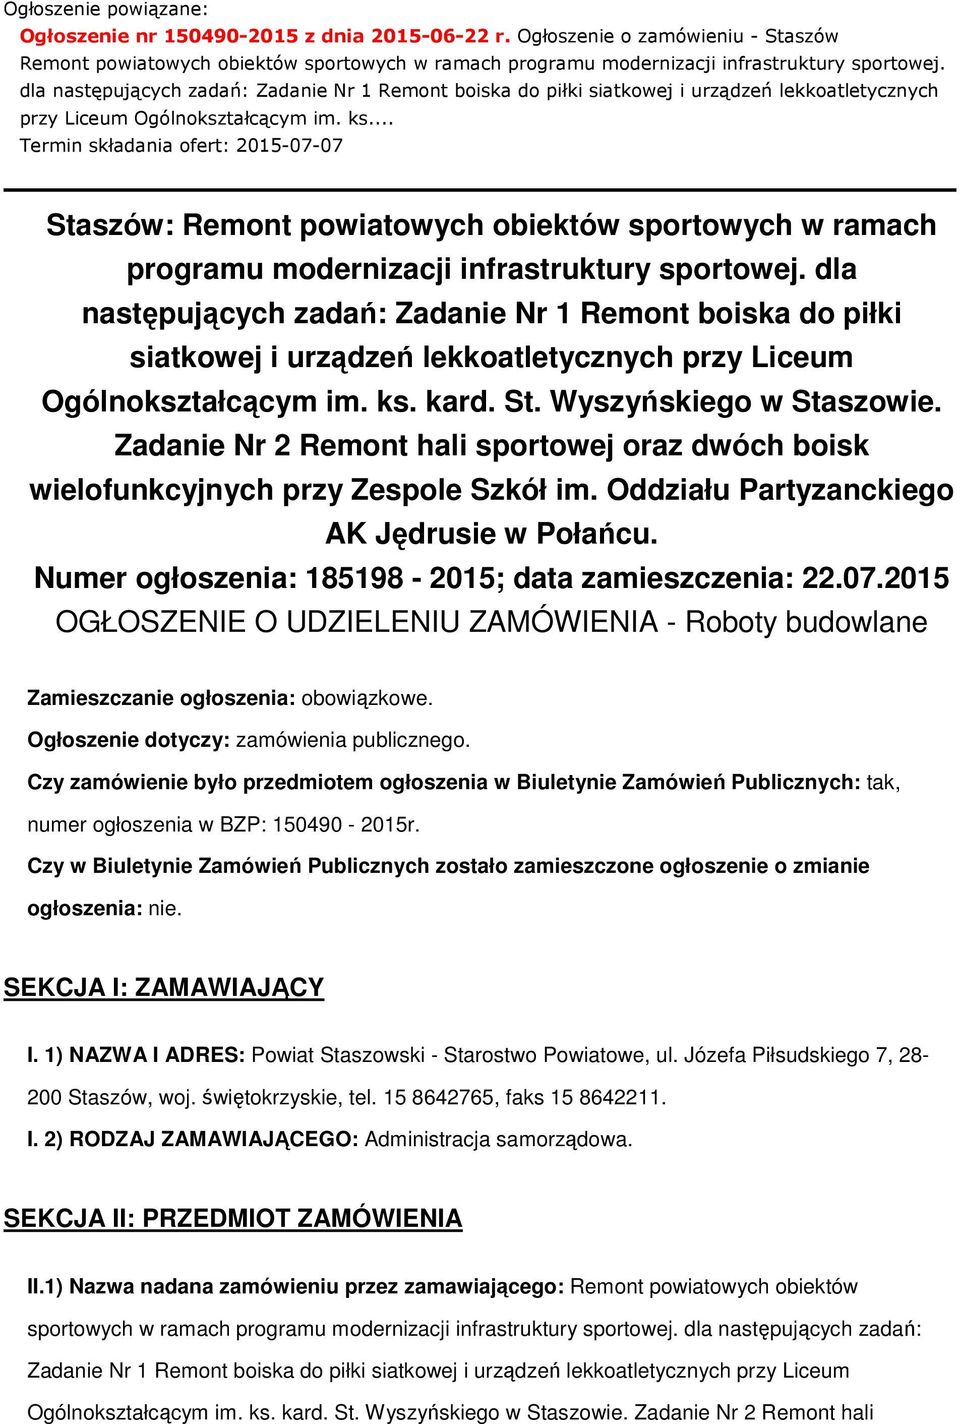 .. Termin składania ofert: 2015-07-07 Staszów: Remont powiatowych obiektów sportowych w ramach programu modernizacji infrastruktury sportowej.  kard. St. Wyszyńskiego w Staszowie.